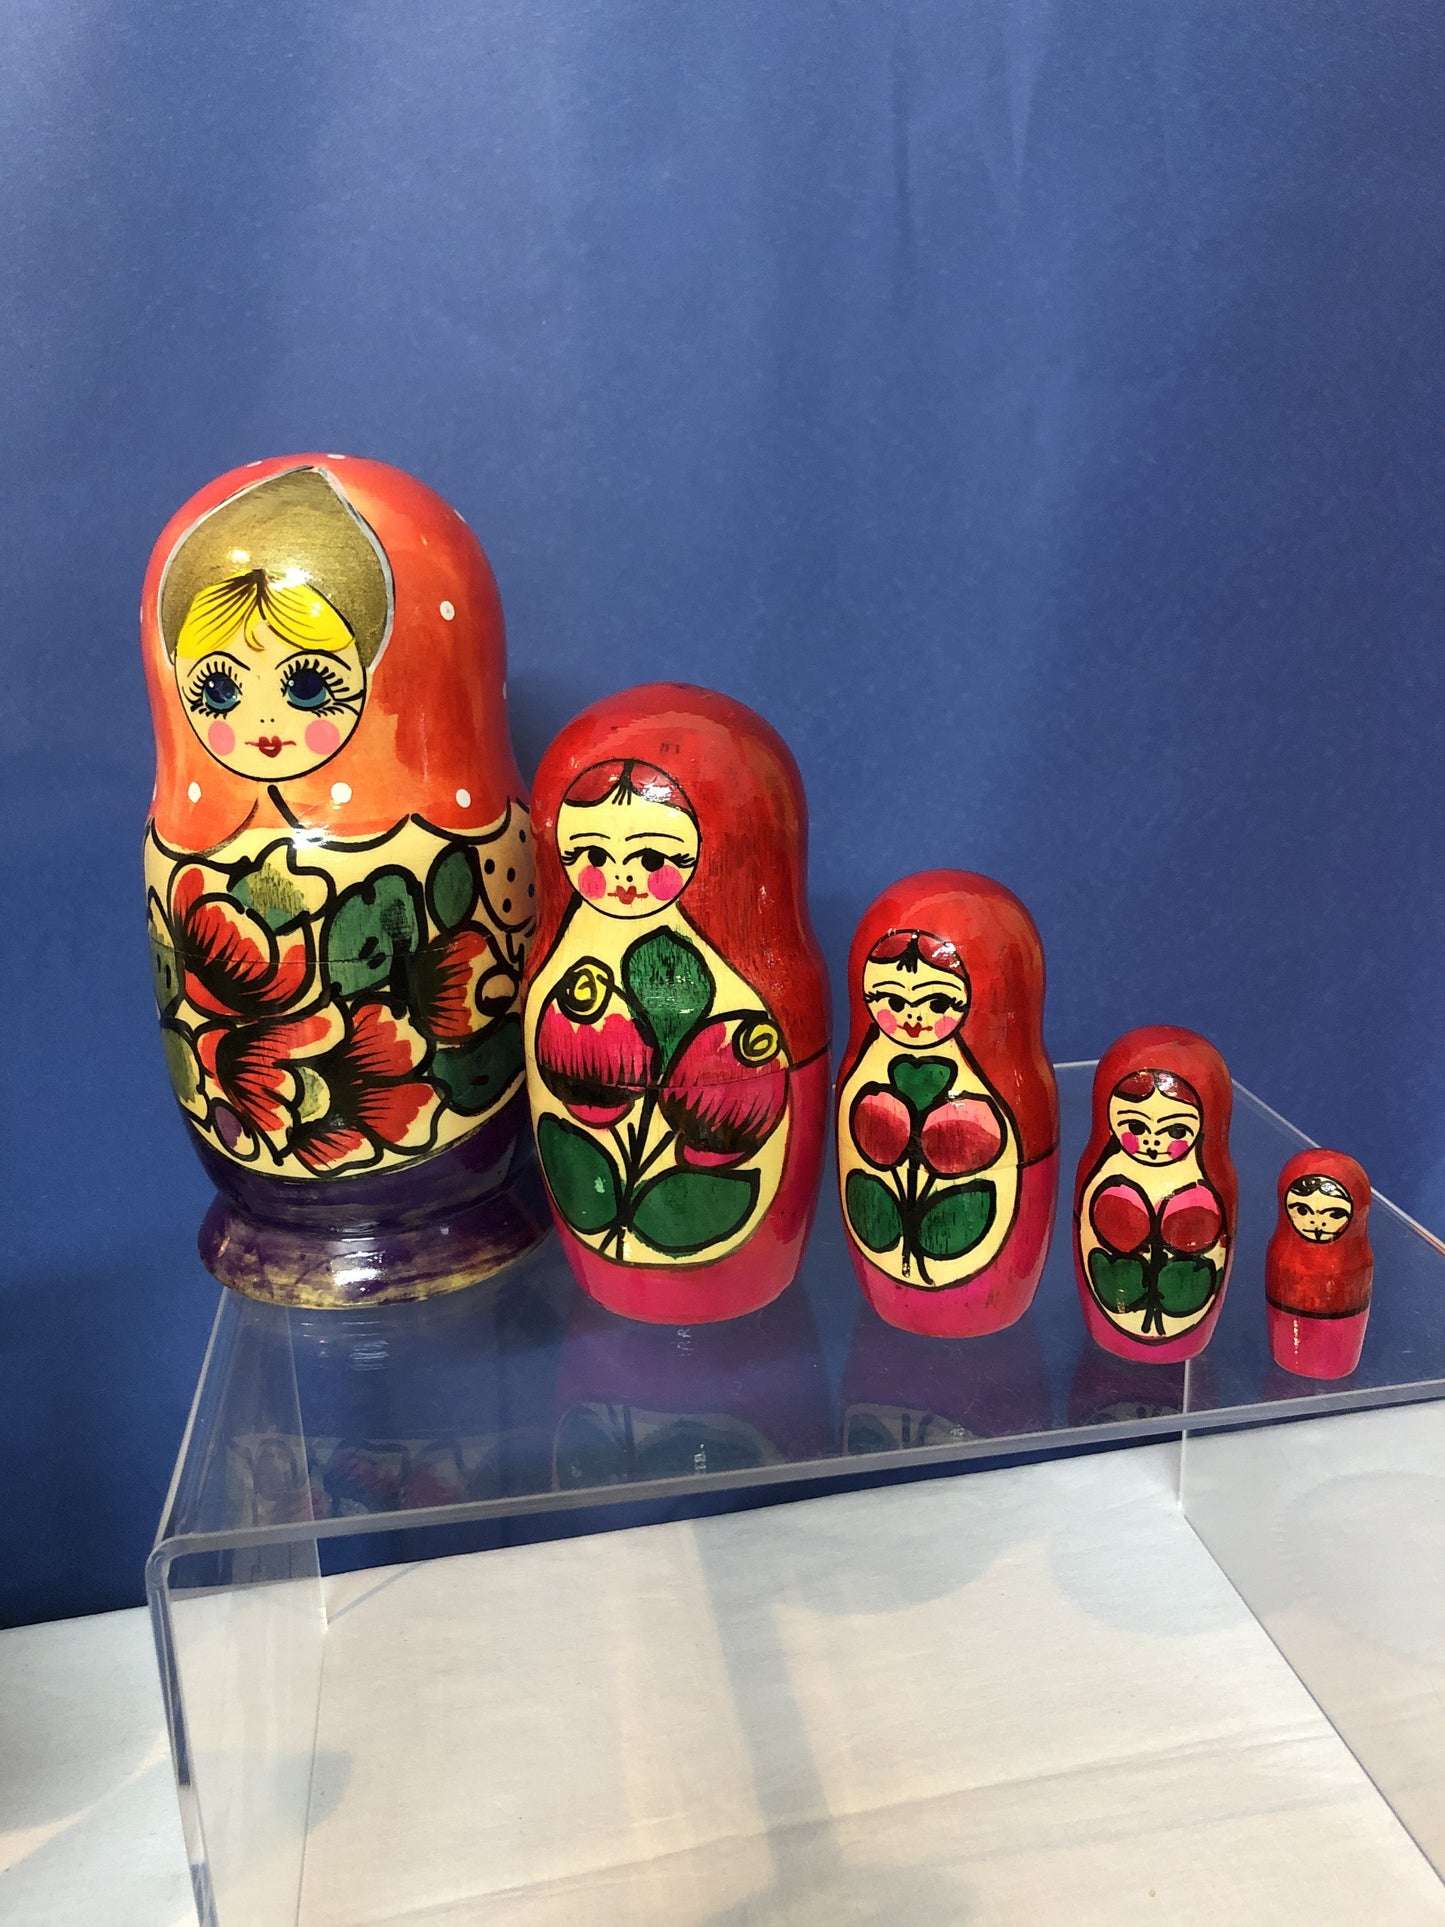 Matröschka russisches Spielzeug aus Holz